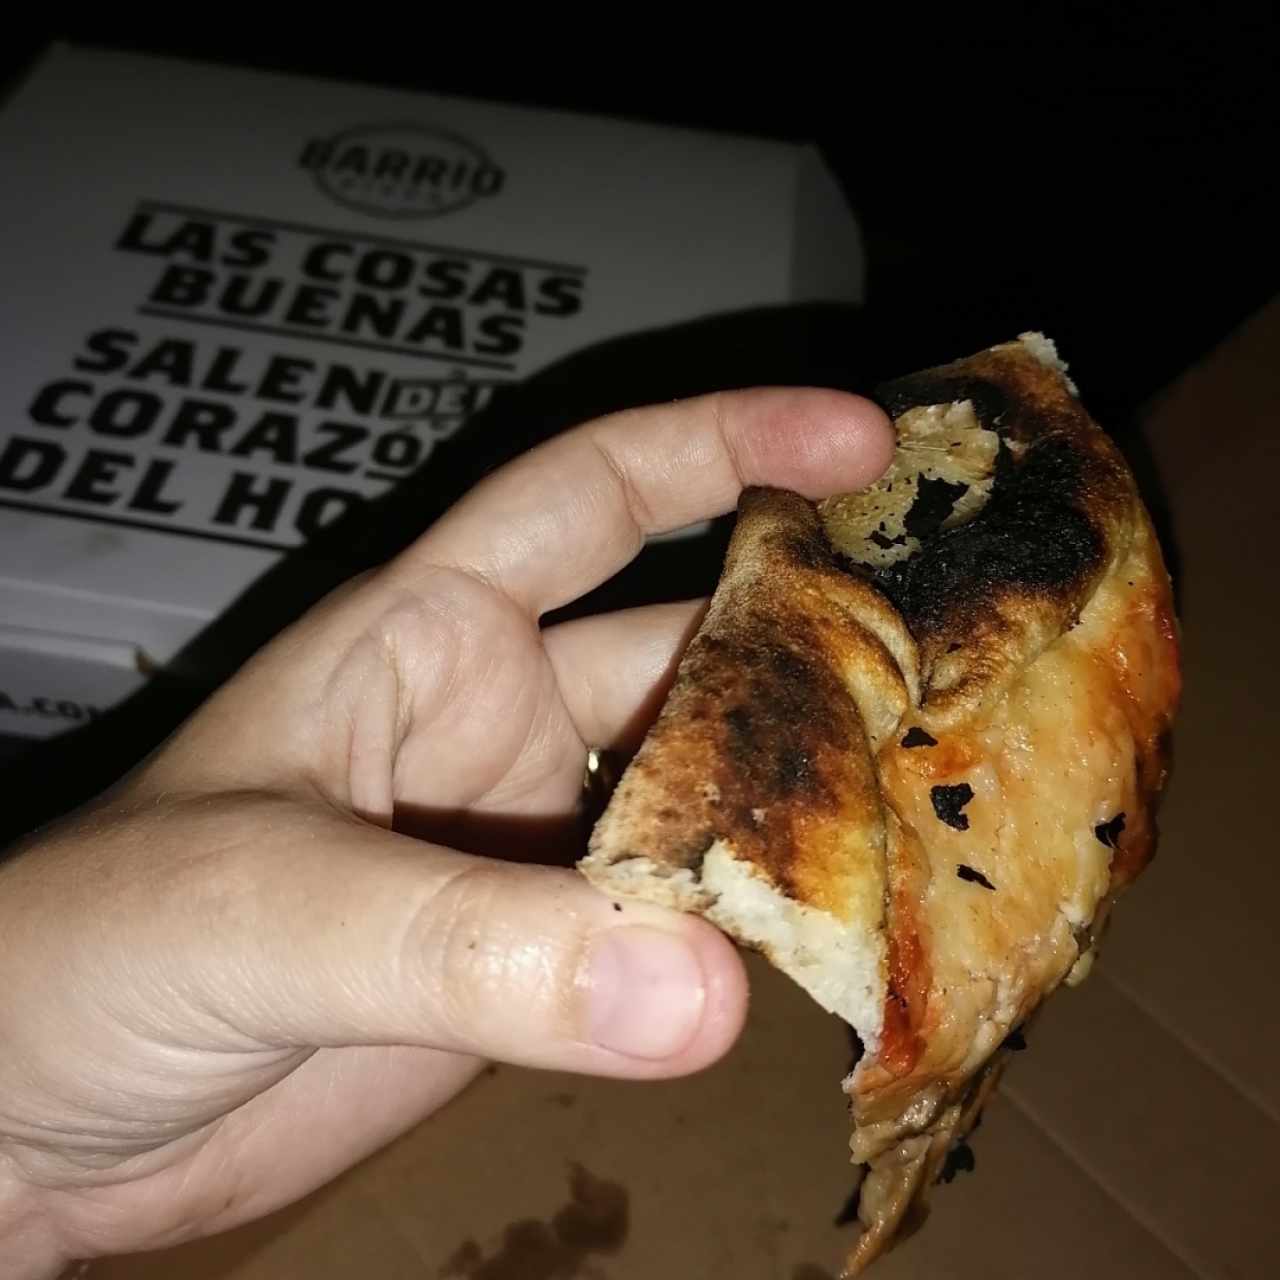 La pizza no se sostiene.. Extremadamente delgada y aguada